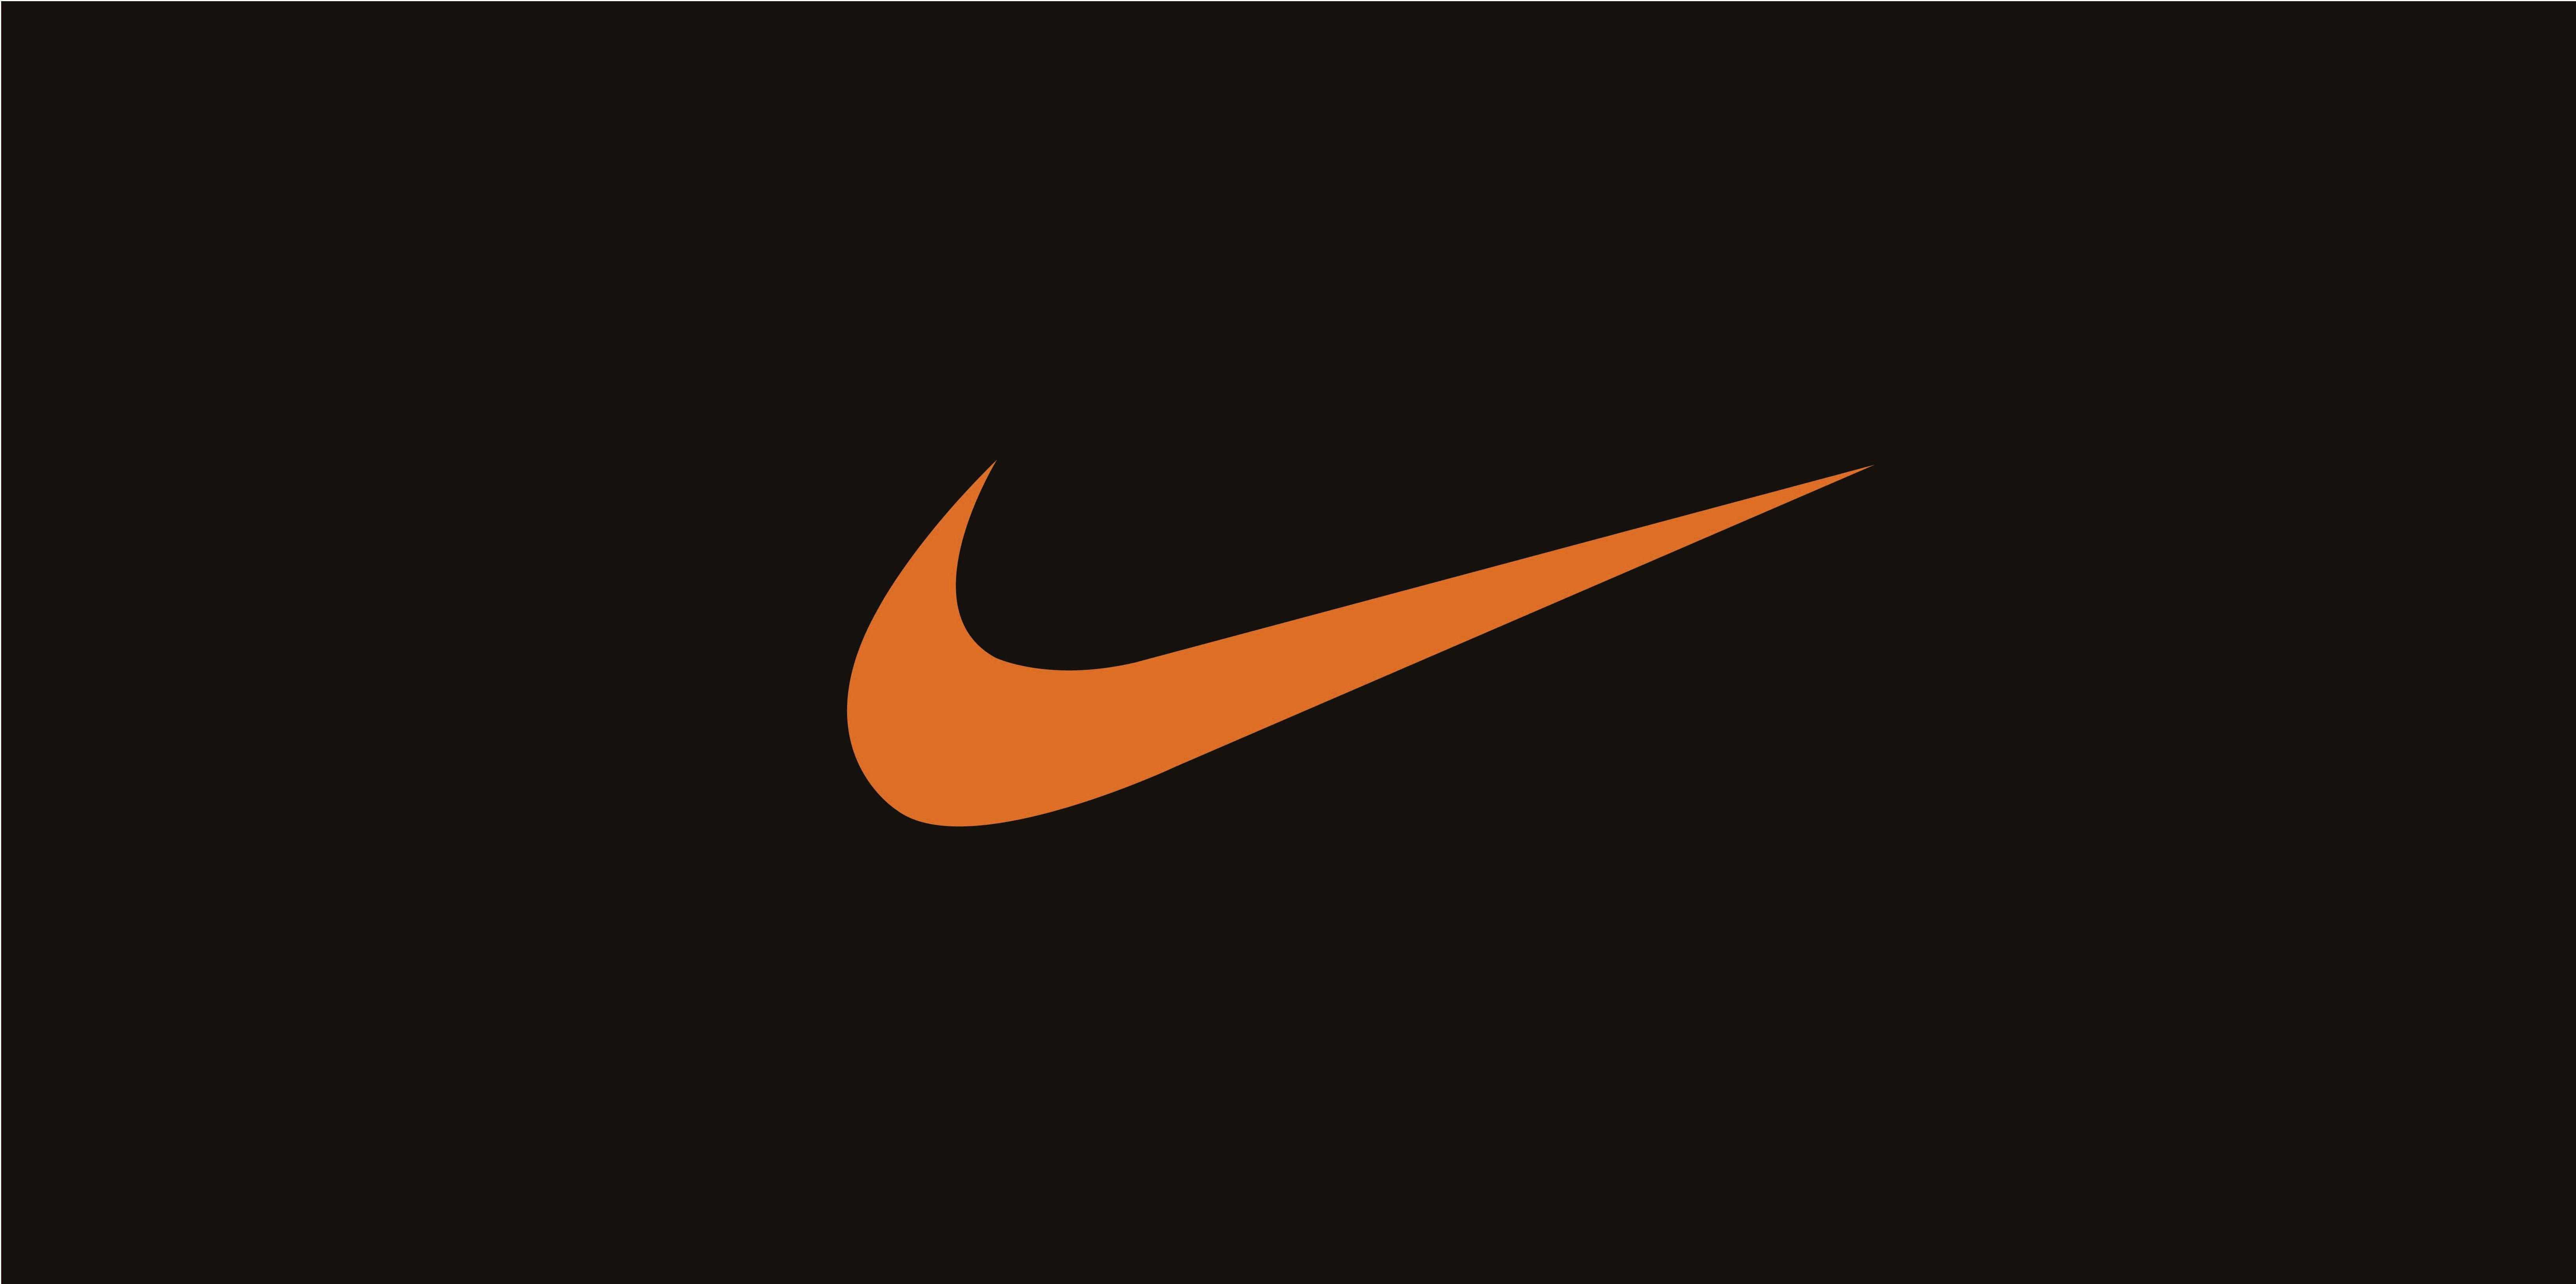 Red Nike Logo - Nike Logo Wallpaper HD free download